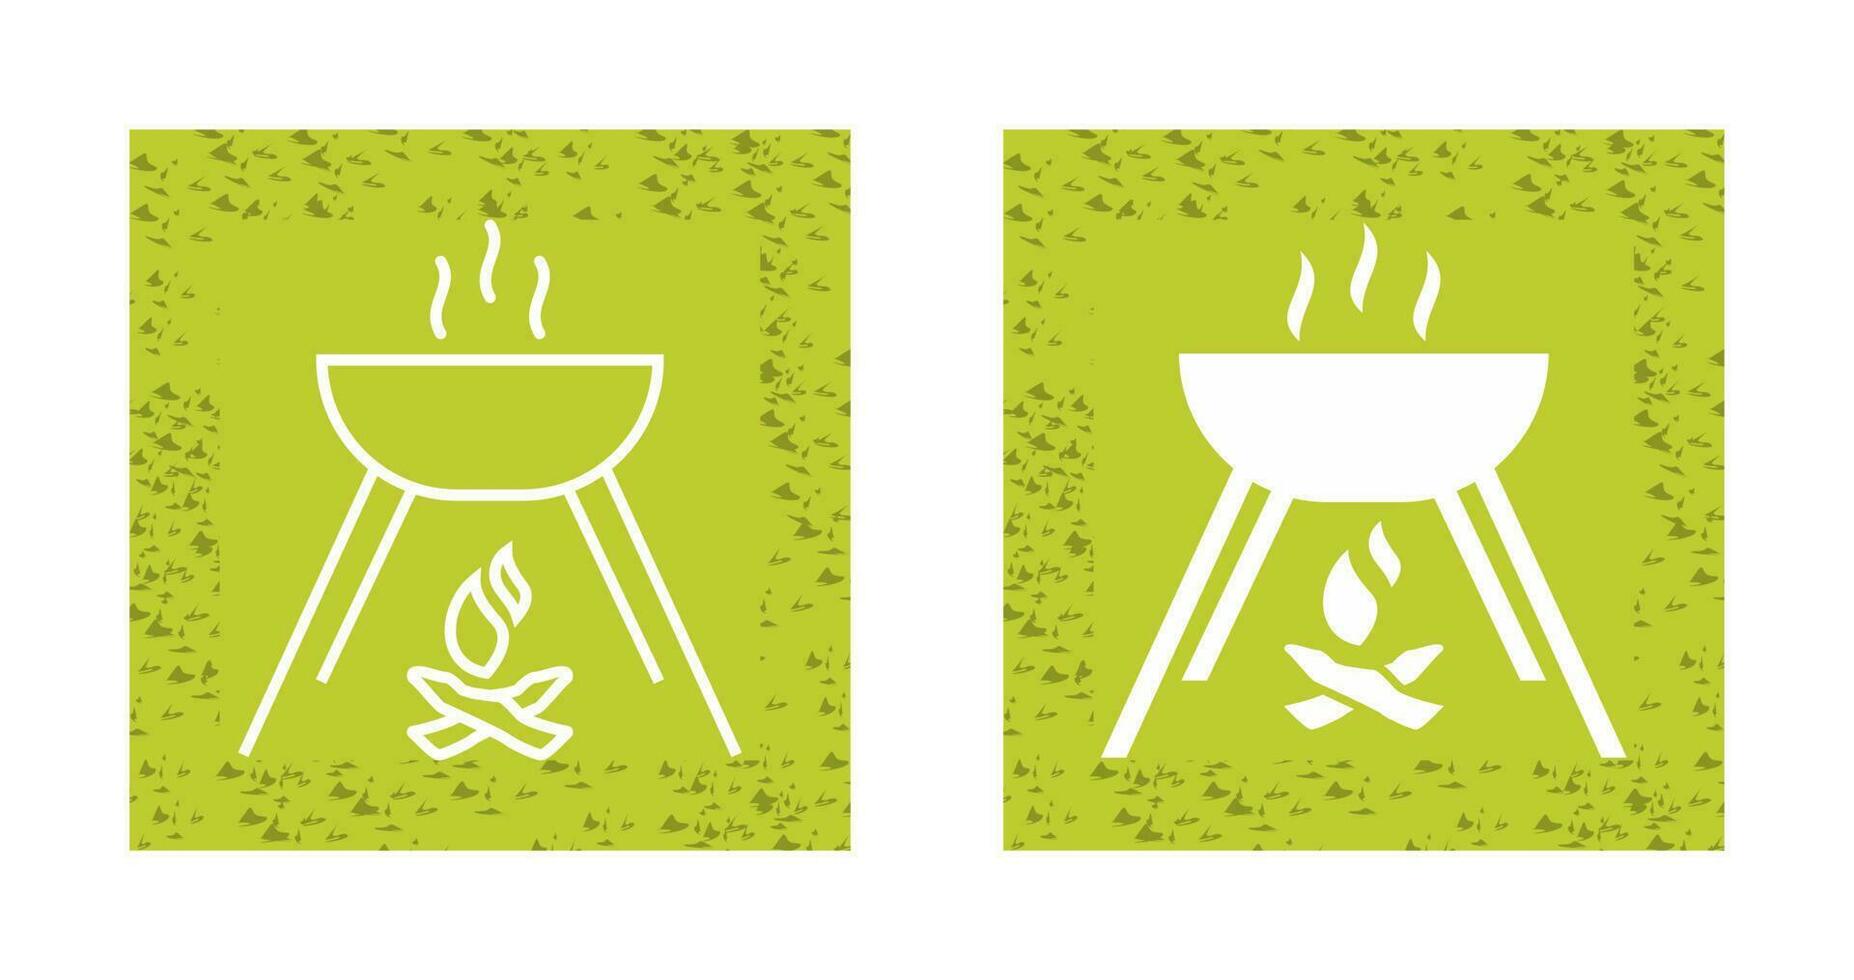 Vektorsymbol für das Kochen von Lebensmitteln vektor